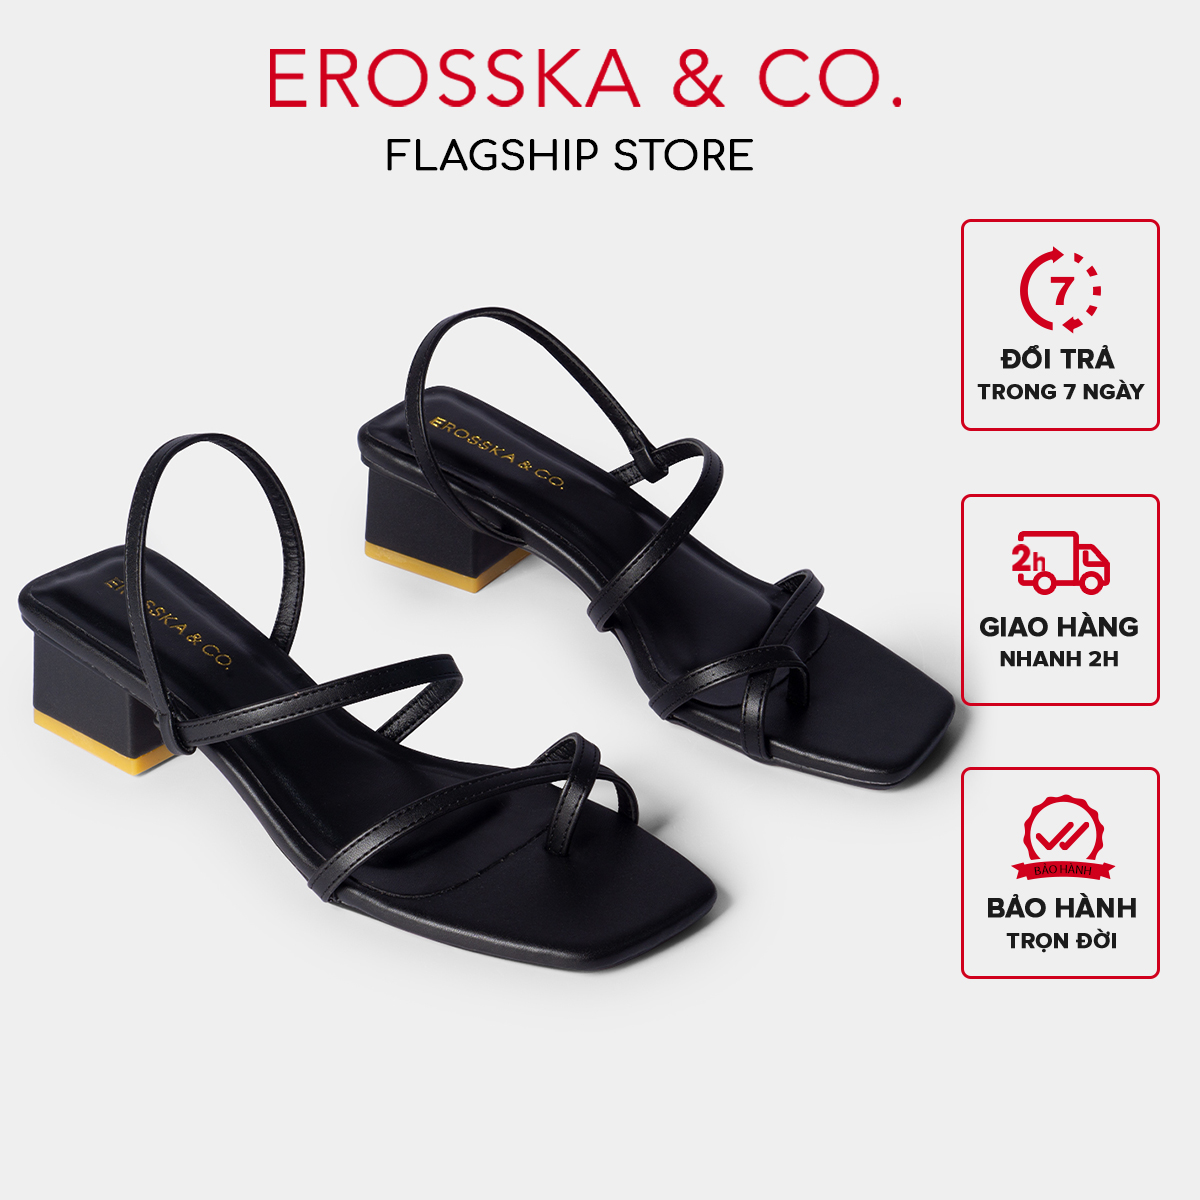 Giày sandal cao gót nữ Erosska kiểu dáng xỏ ngón dây mảnh thời trang cao 5cm màu đen - EB024